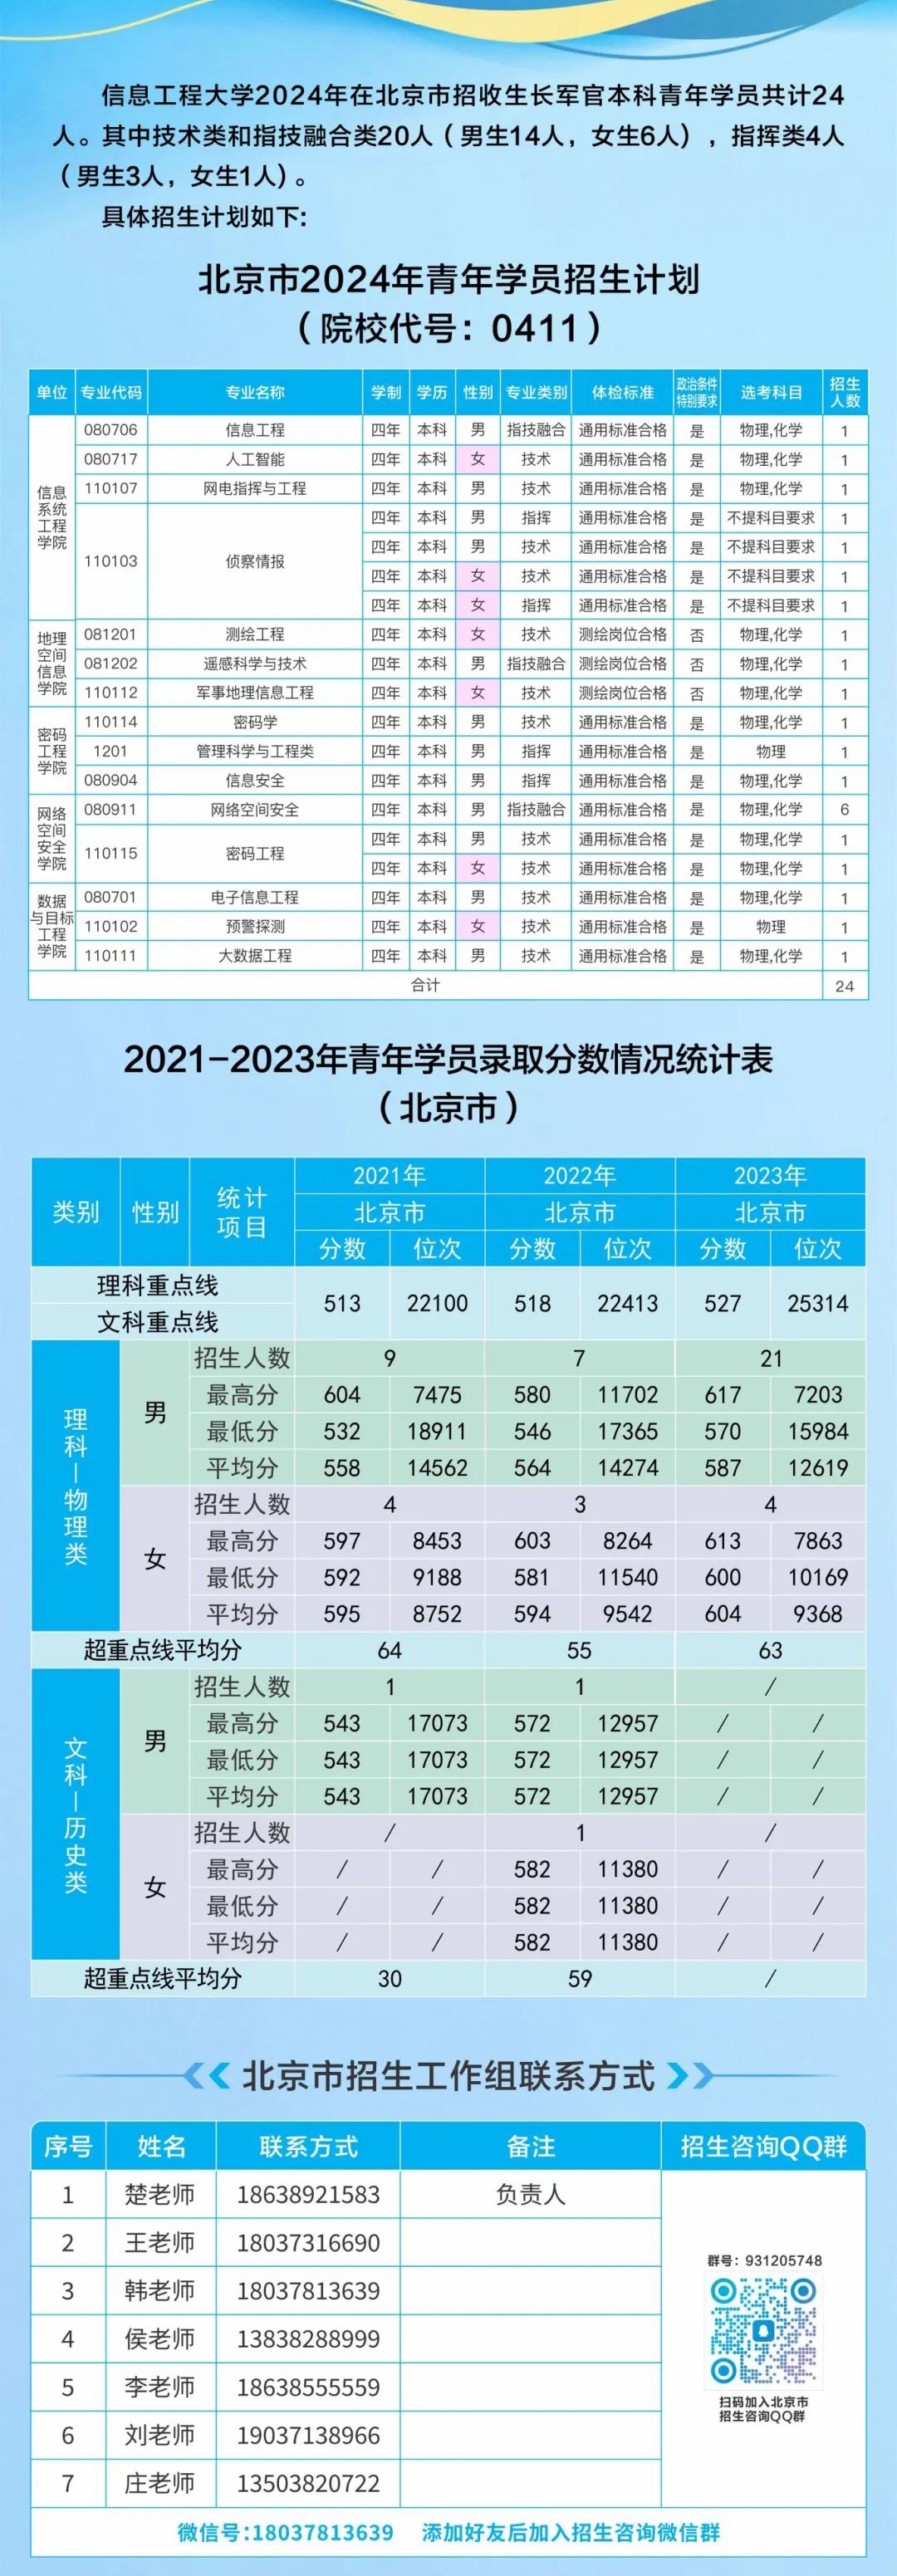 信息工程大学2024年在京招收普通高中毕业生计划